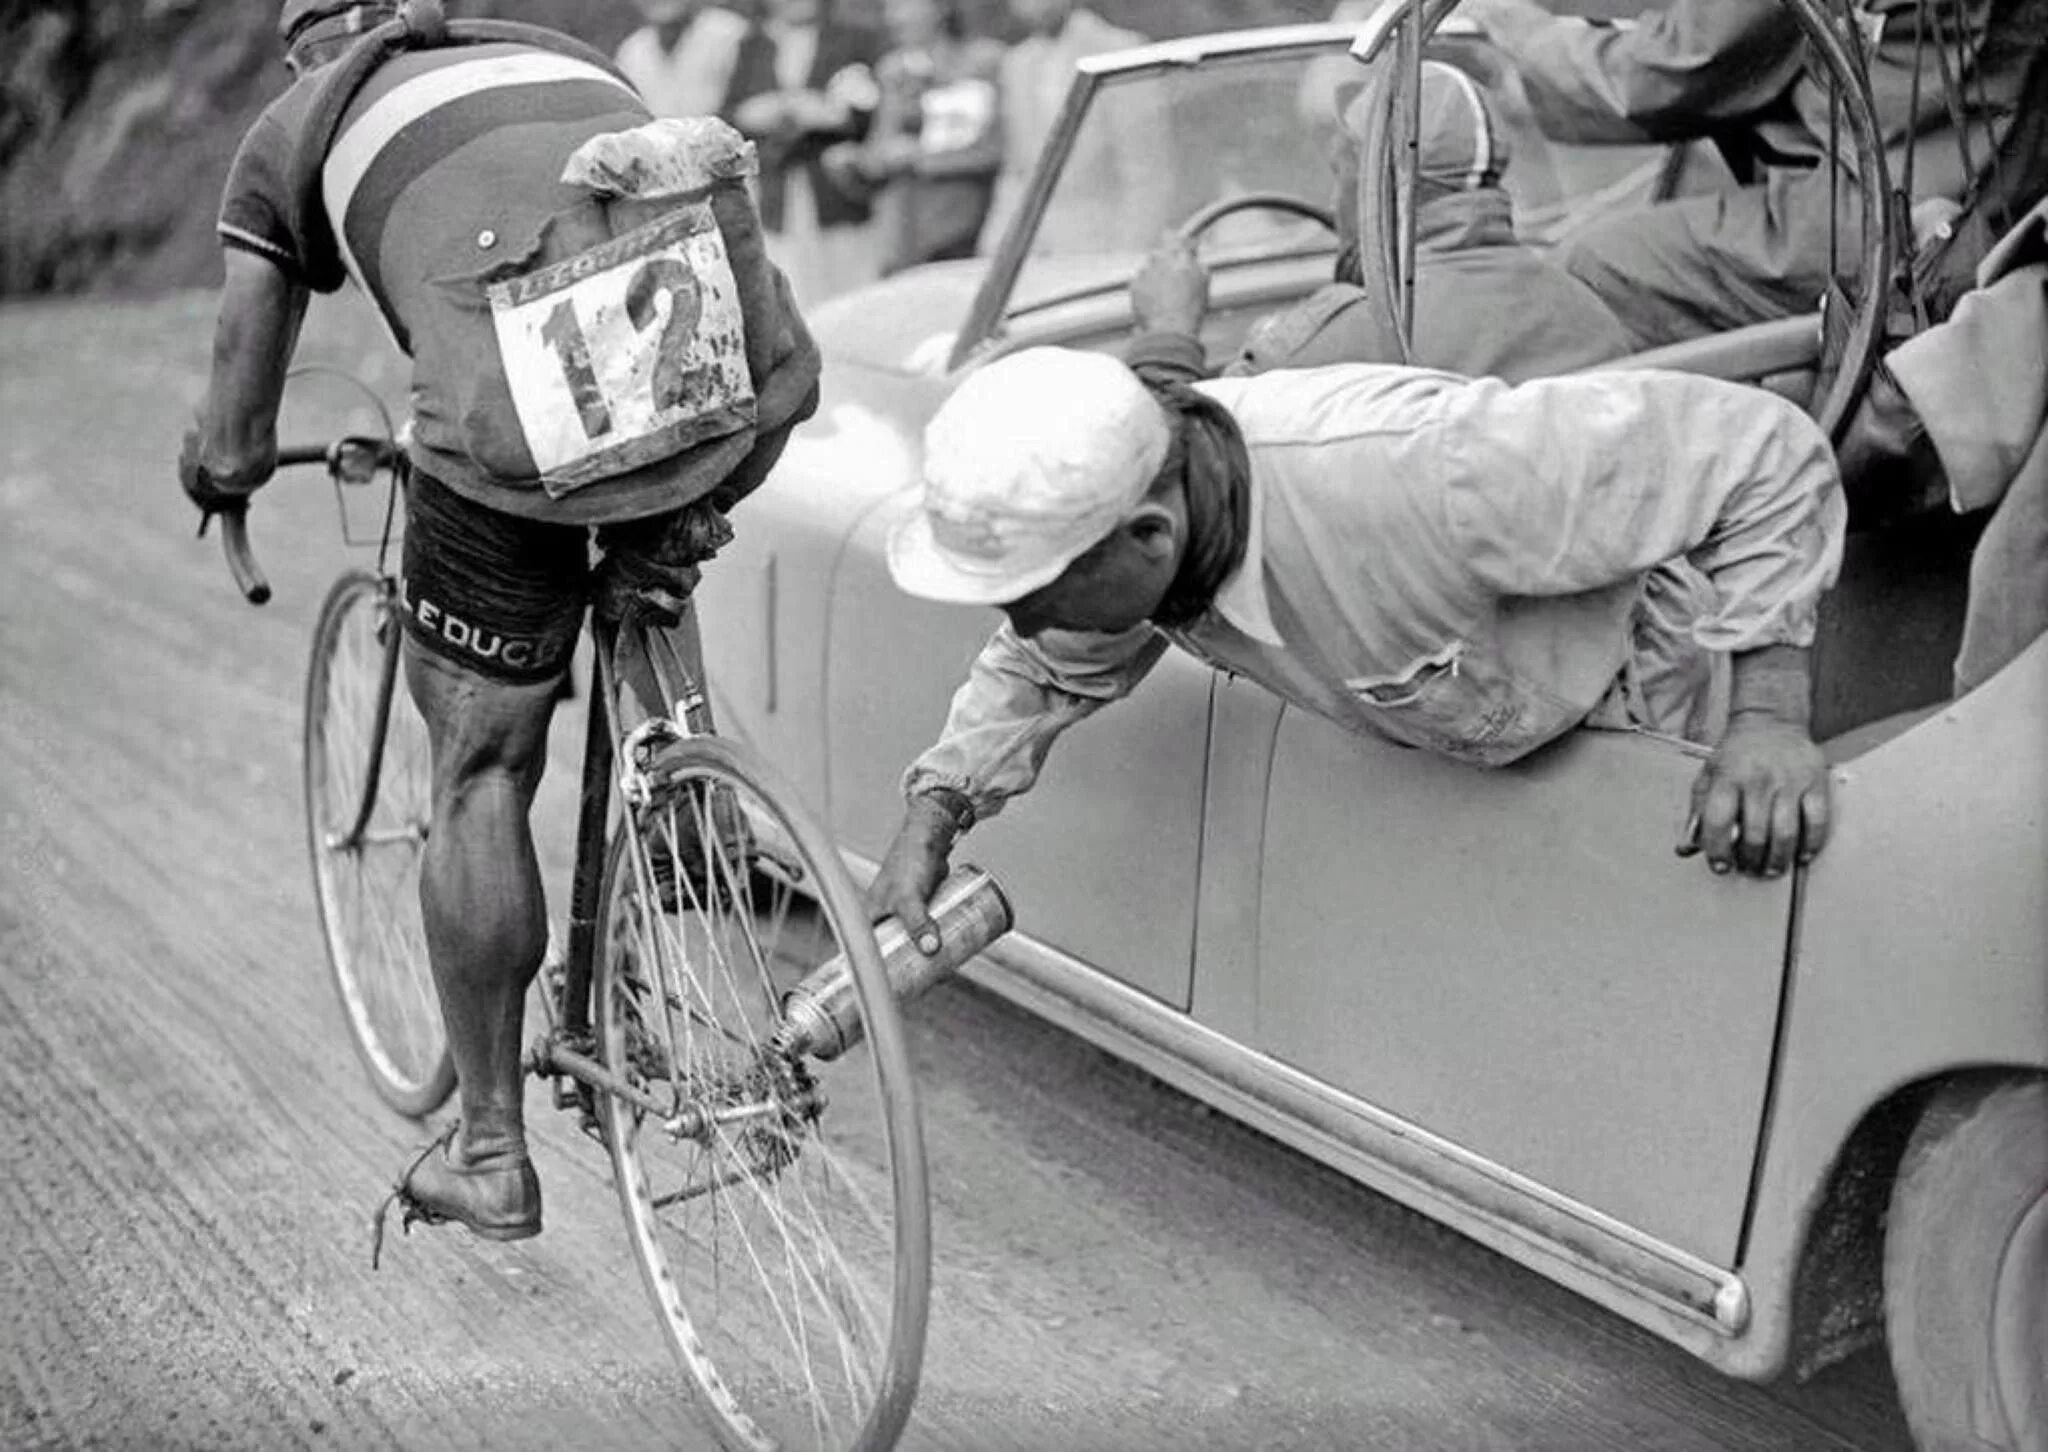 Тур де Франс велосипеды. Тур де Франс старые фото. Тур де Франс 1949. Ретро велосипеды тур де Франс.